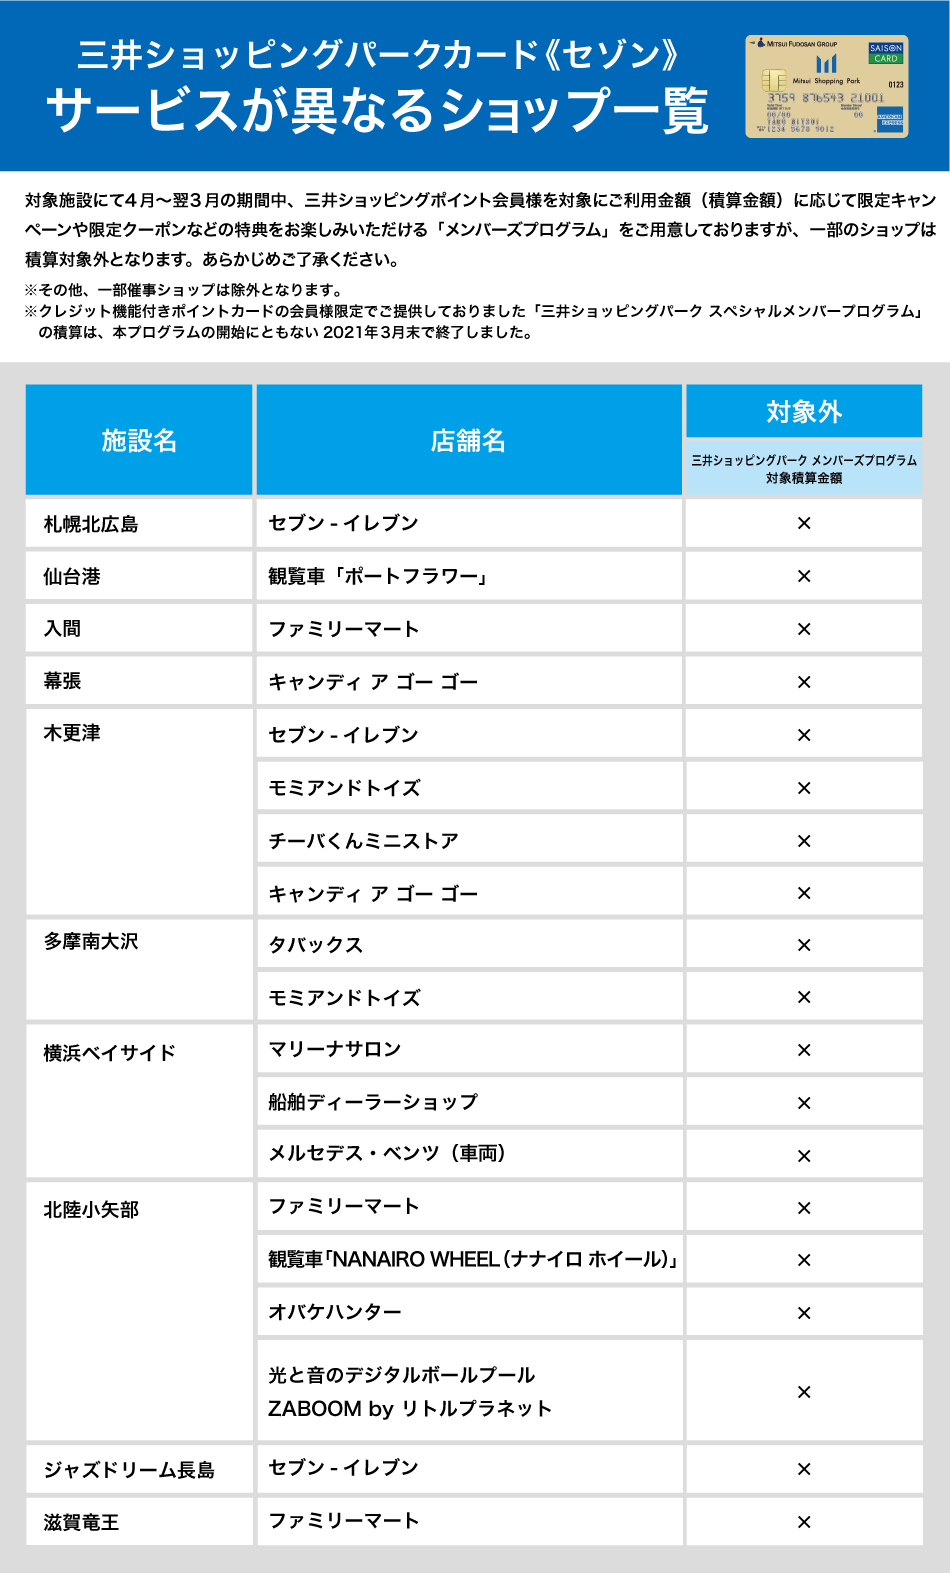 三井ショッピングパークカード《セゾン》 サービスが異なるショップ一覧